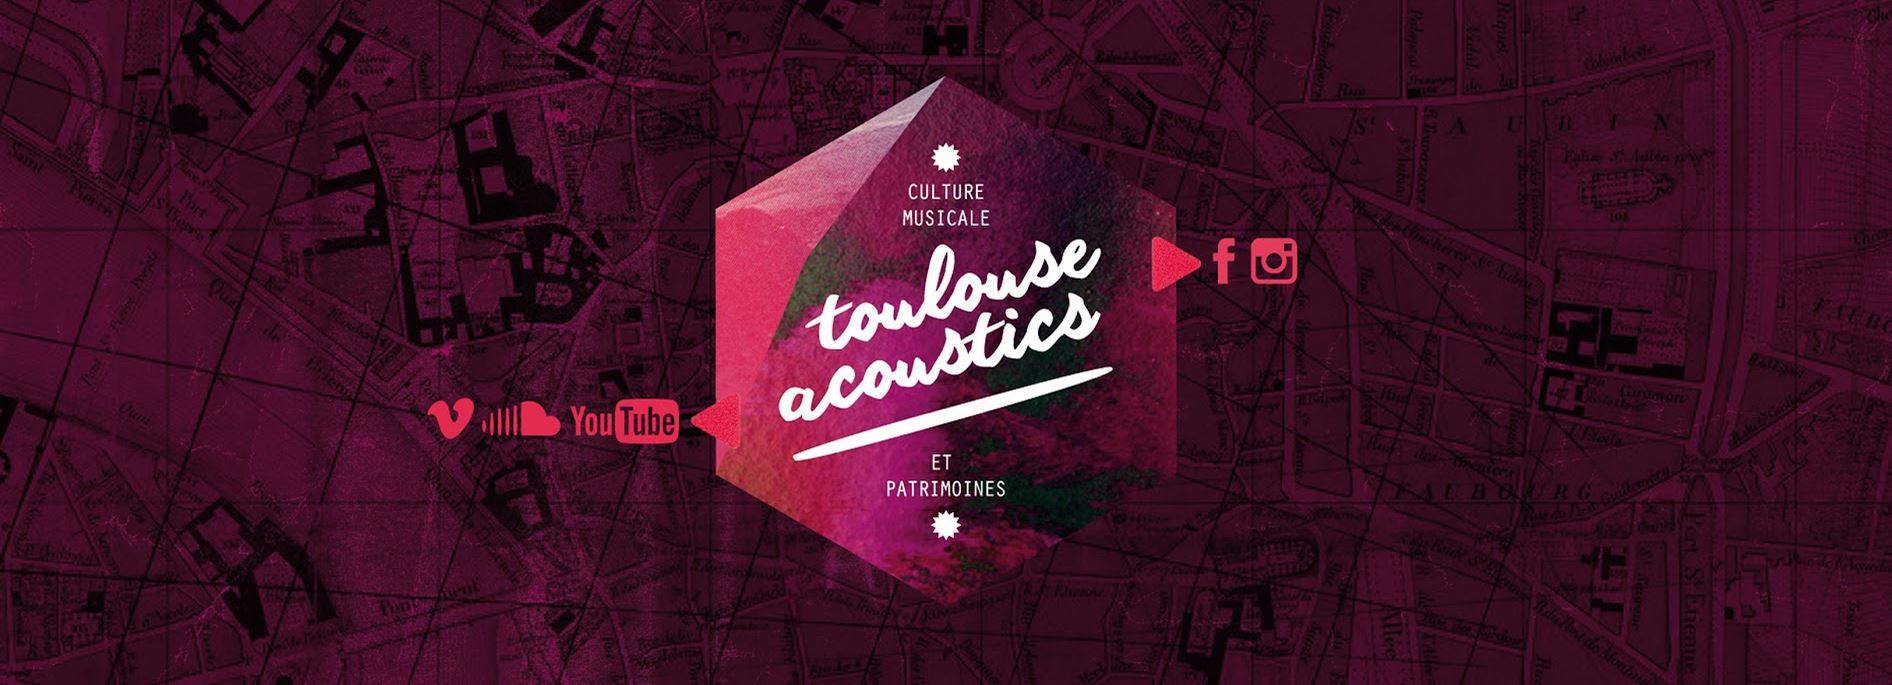 Toulouse Acoustics met Toulouse en scène